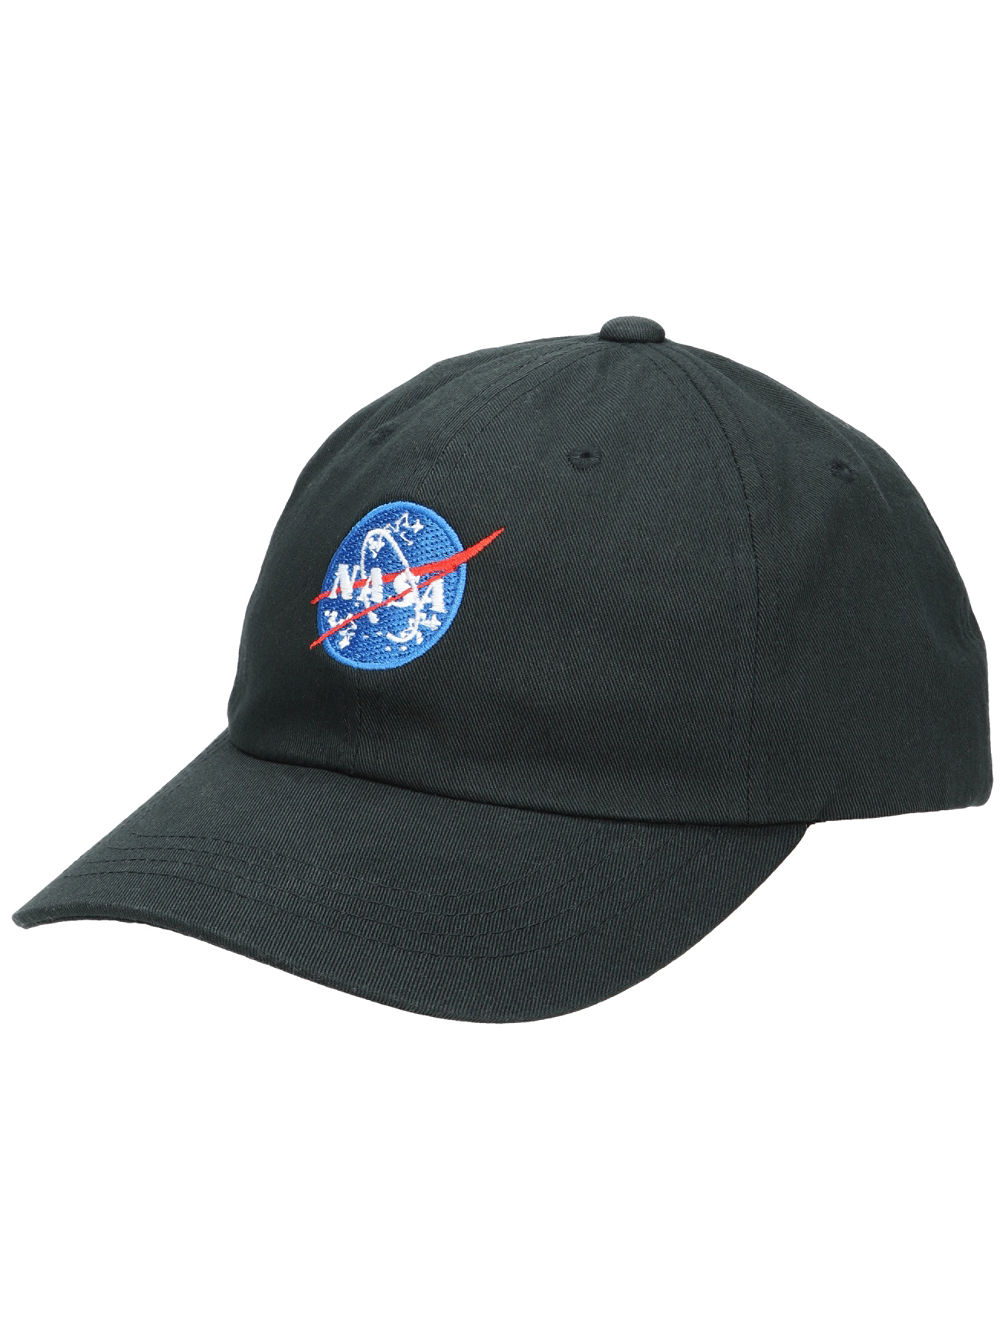 NASA Dad Cap